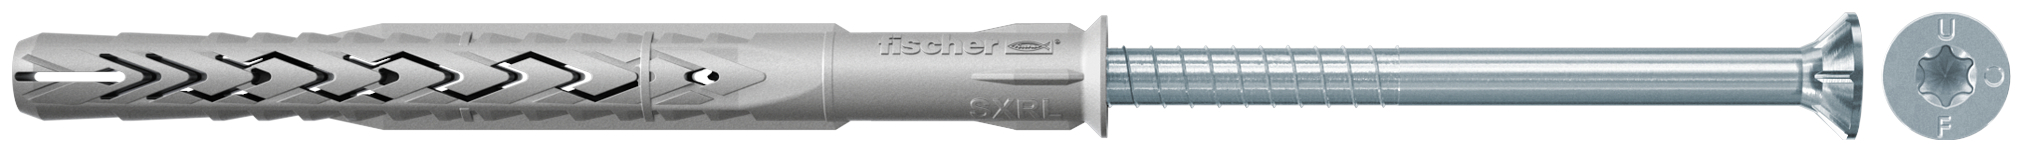 fischer Tasselli prolungati SXRL 8x140 T (1 Pz.) Tassello prolungato in nylon con marcatura CE con vite premontata T.S.P. impronta torx.